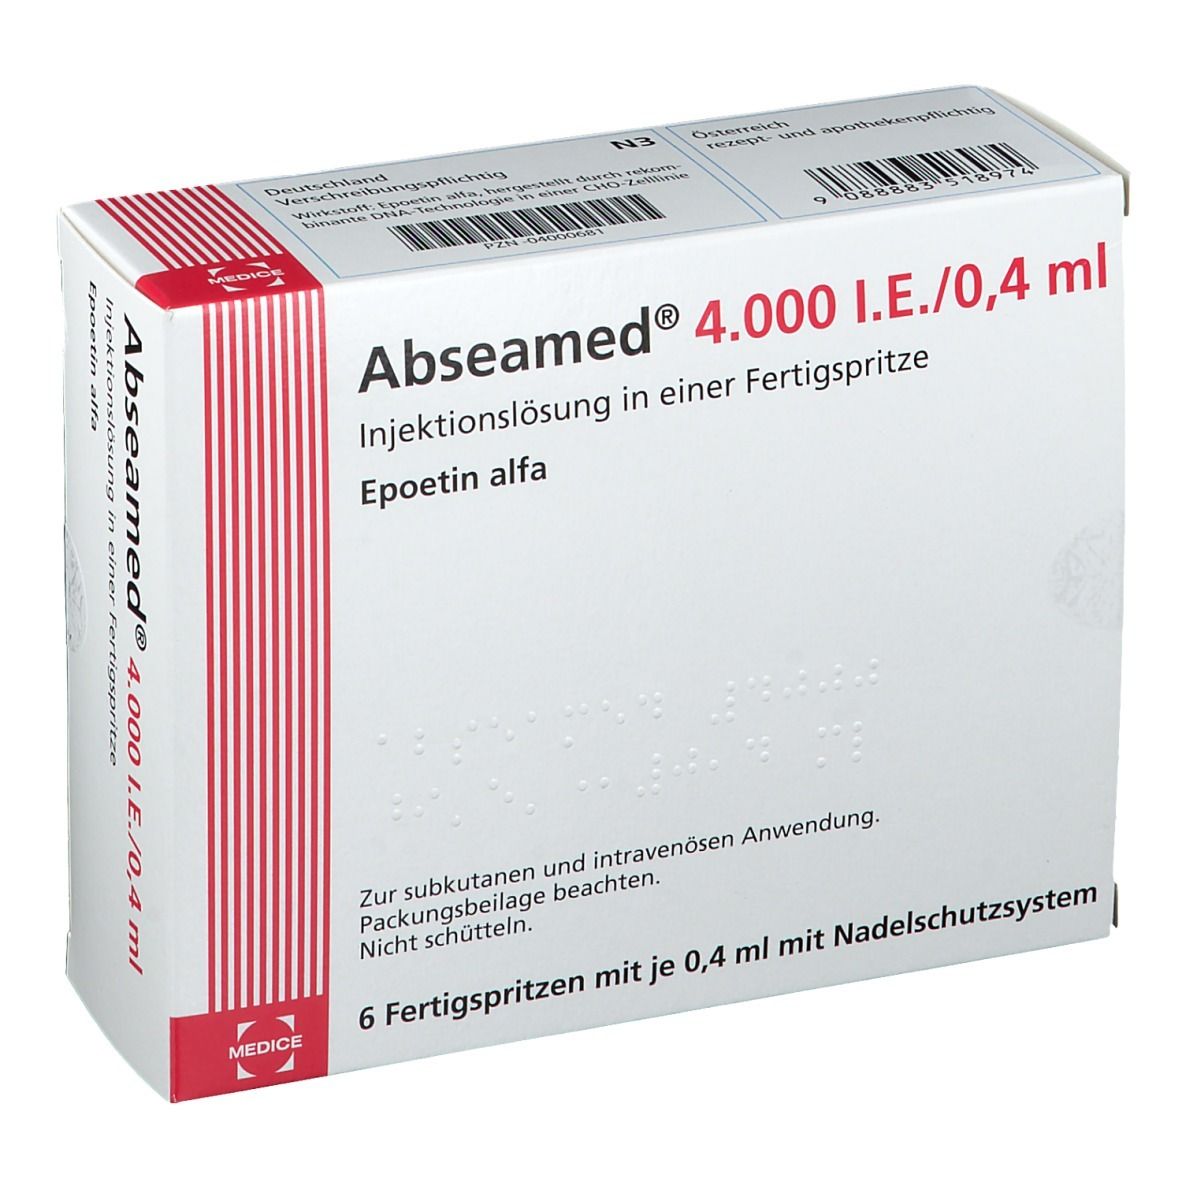 Abseamed® 4.000 I.E./0,4 ml